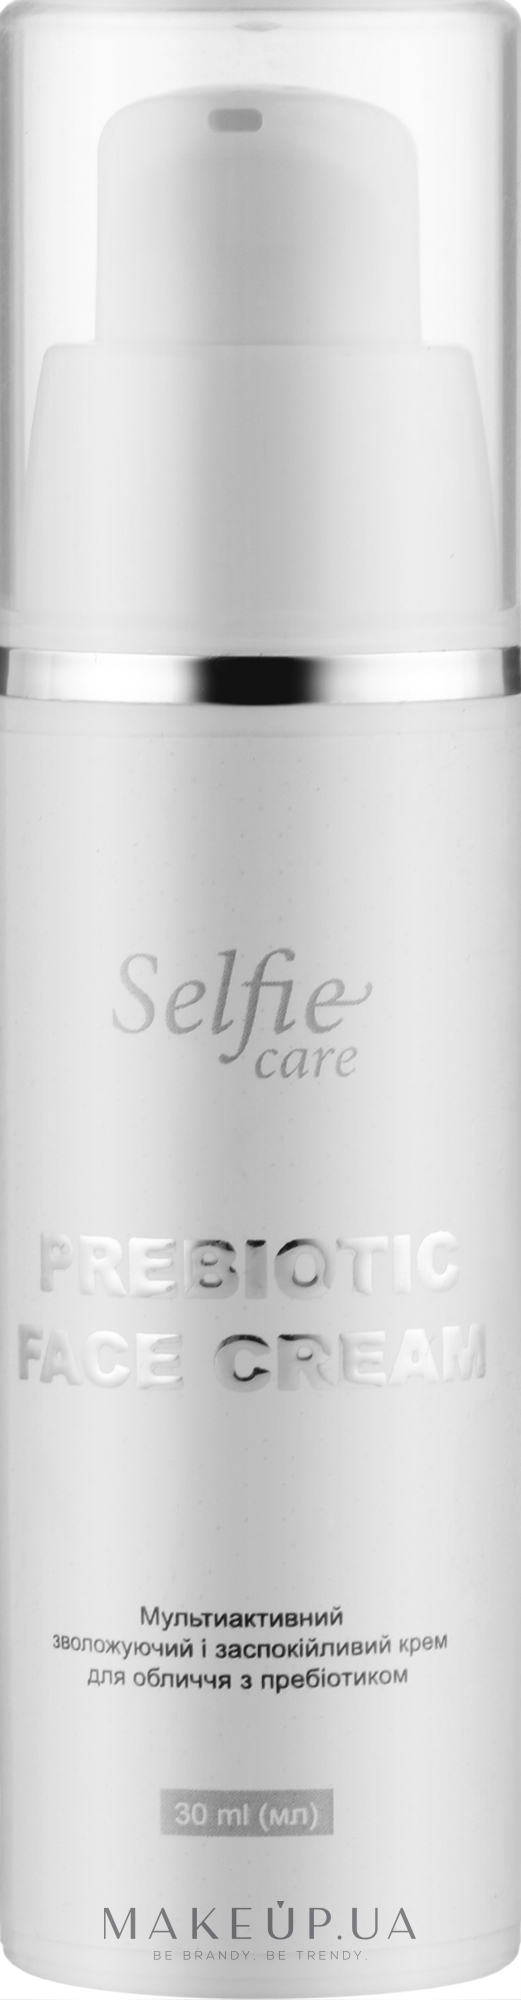 Успокаивающий и увлажняющий дневной крем для лица с пробиотиками - Selfie Care Prebiotic Face Cream — фото 30ml